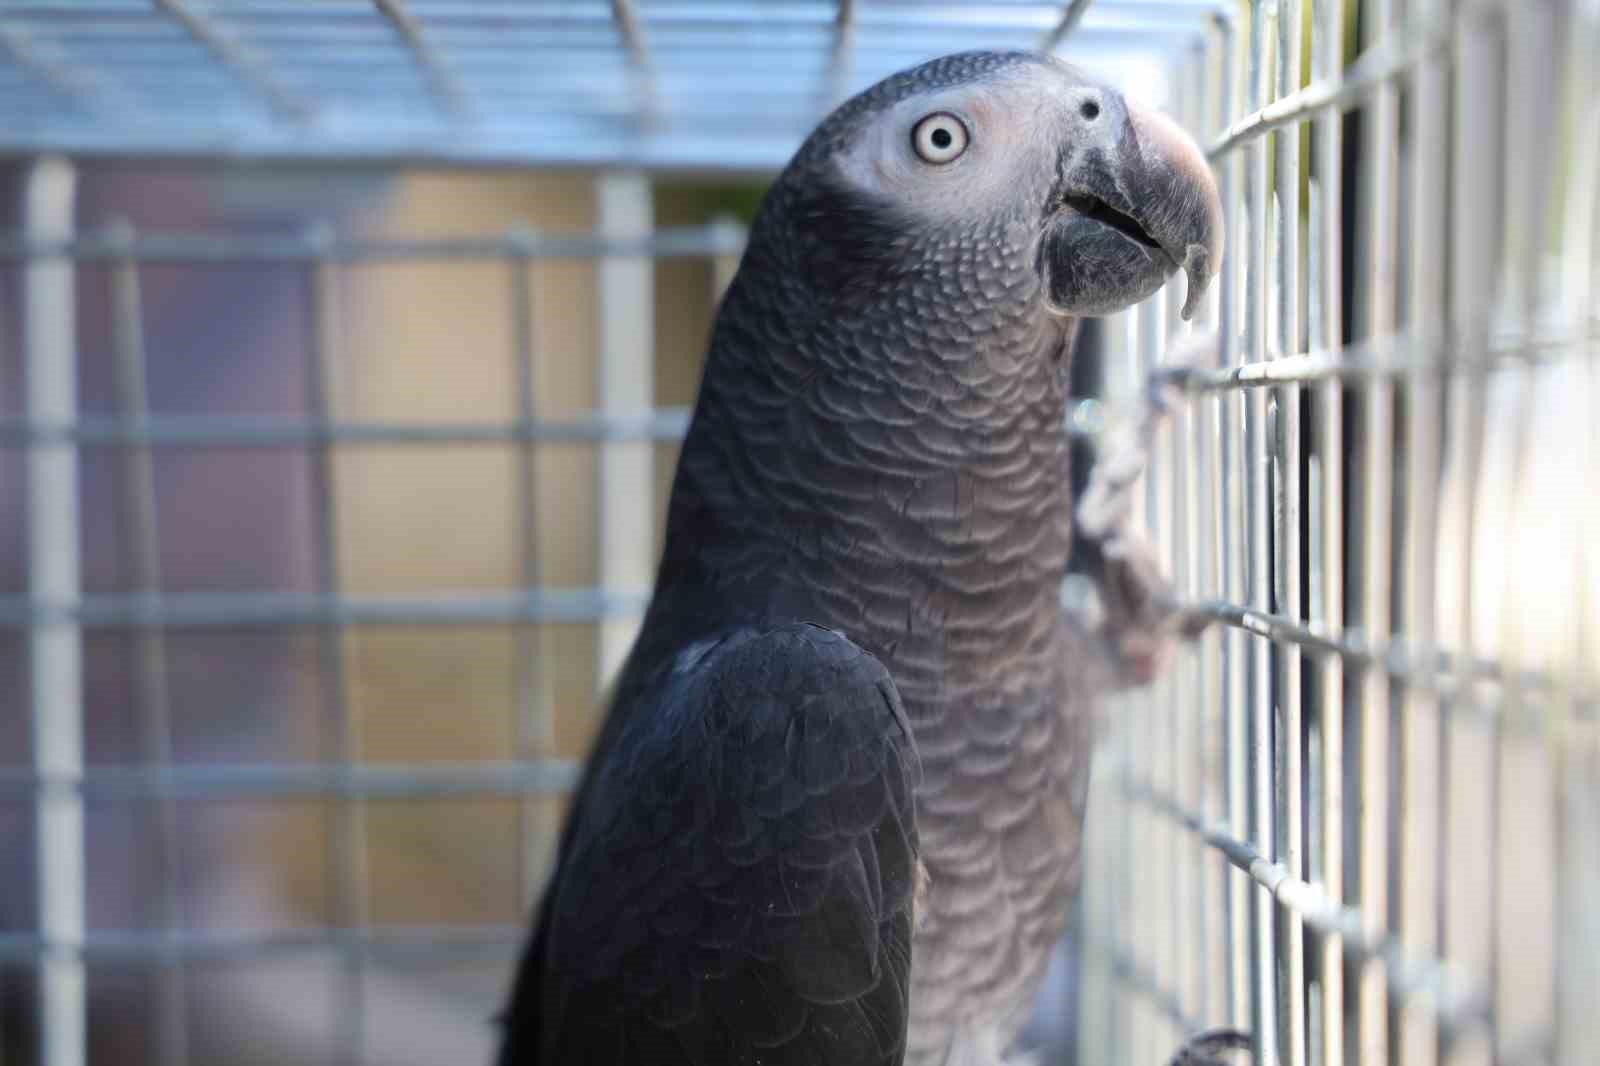 Elazığ’da ’Kübra’ diye seslenen papağan bulundu, sahibine ulaşılmaya çalışılıyor